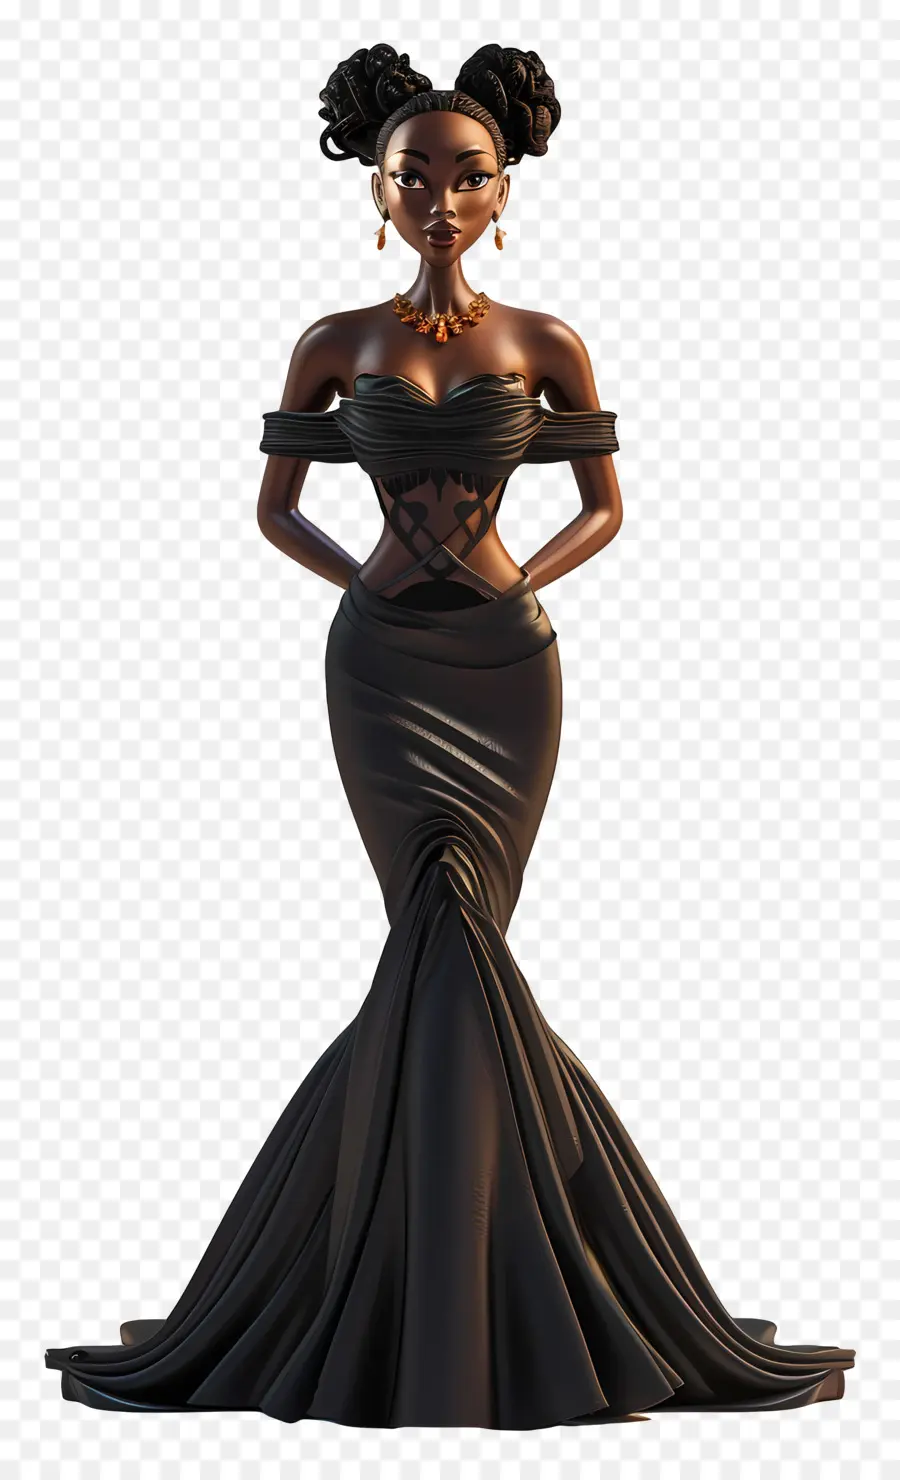 Schwarzes Mädchen im Kleid schwarzes Abendkleid außerhalb der Schulterhülse formelle Veranstaltung mit hohen Heul-Schuhen - Elegantes schwarzes Abendkleid mit Offoulder-Ärmeln